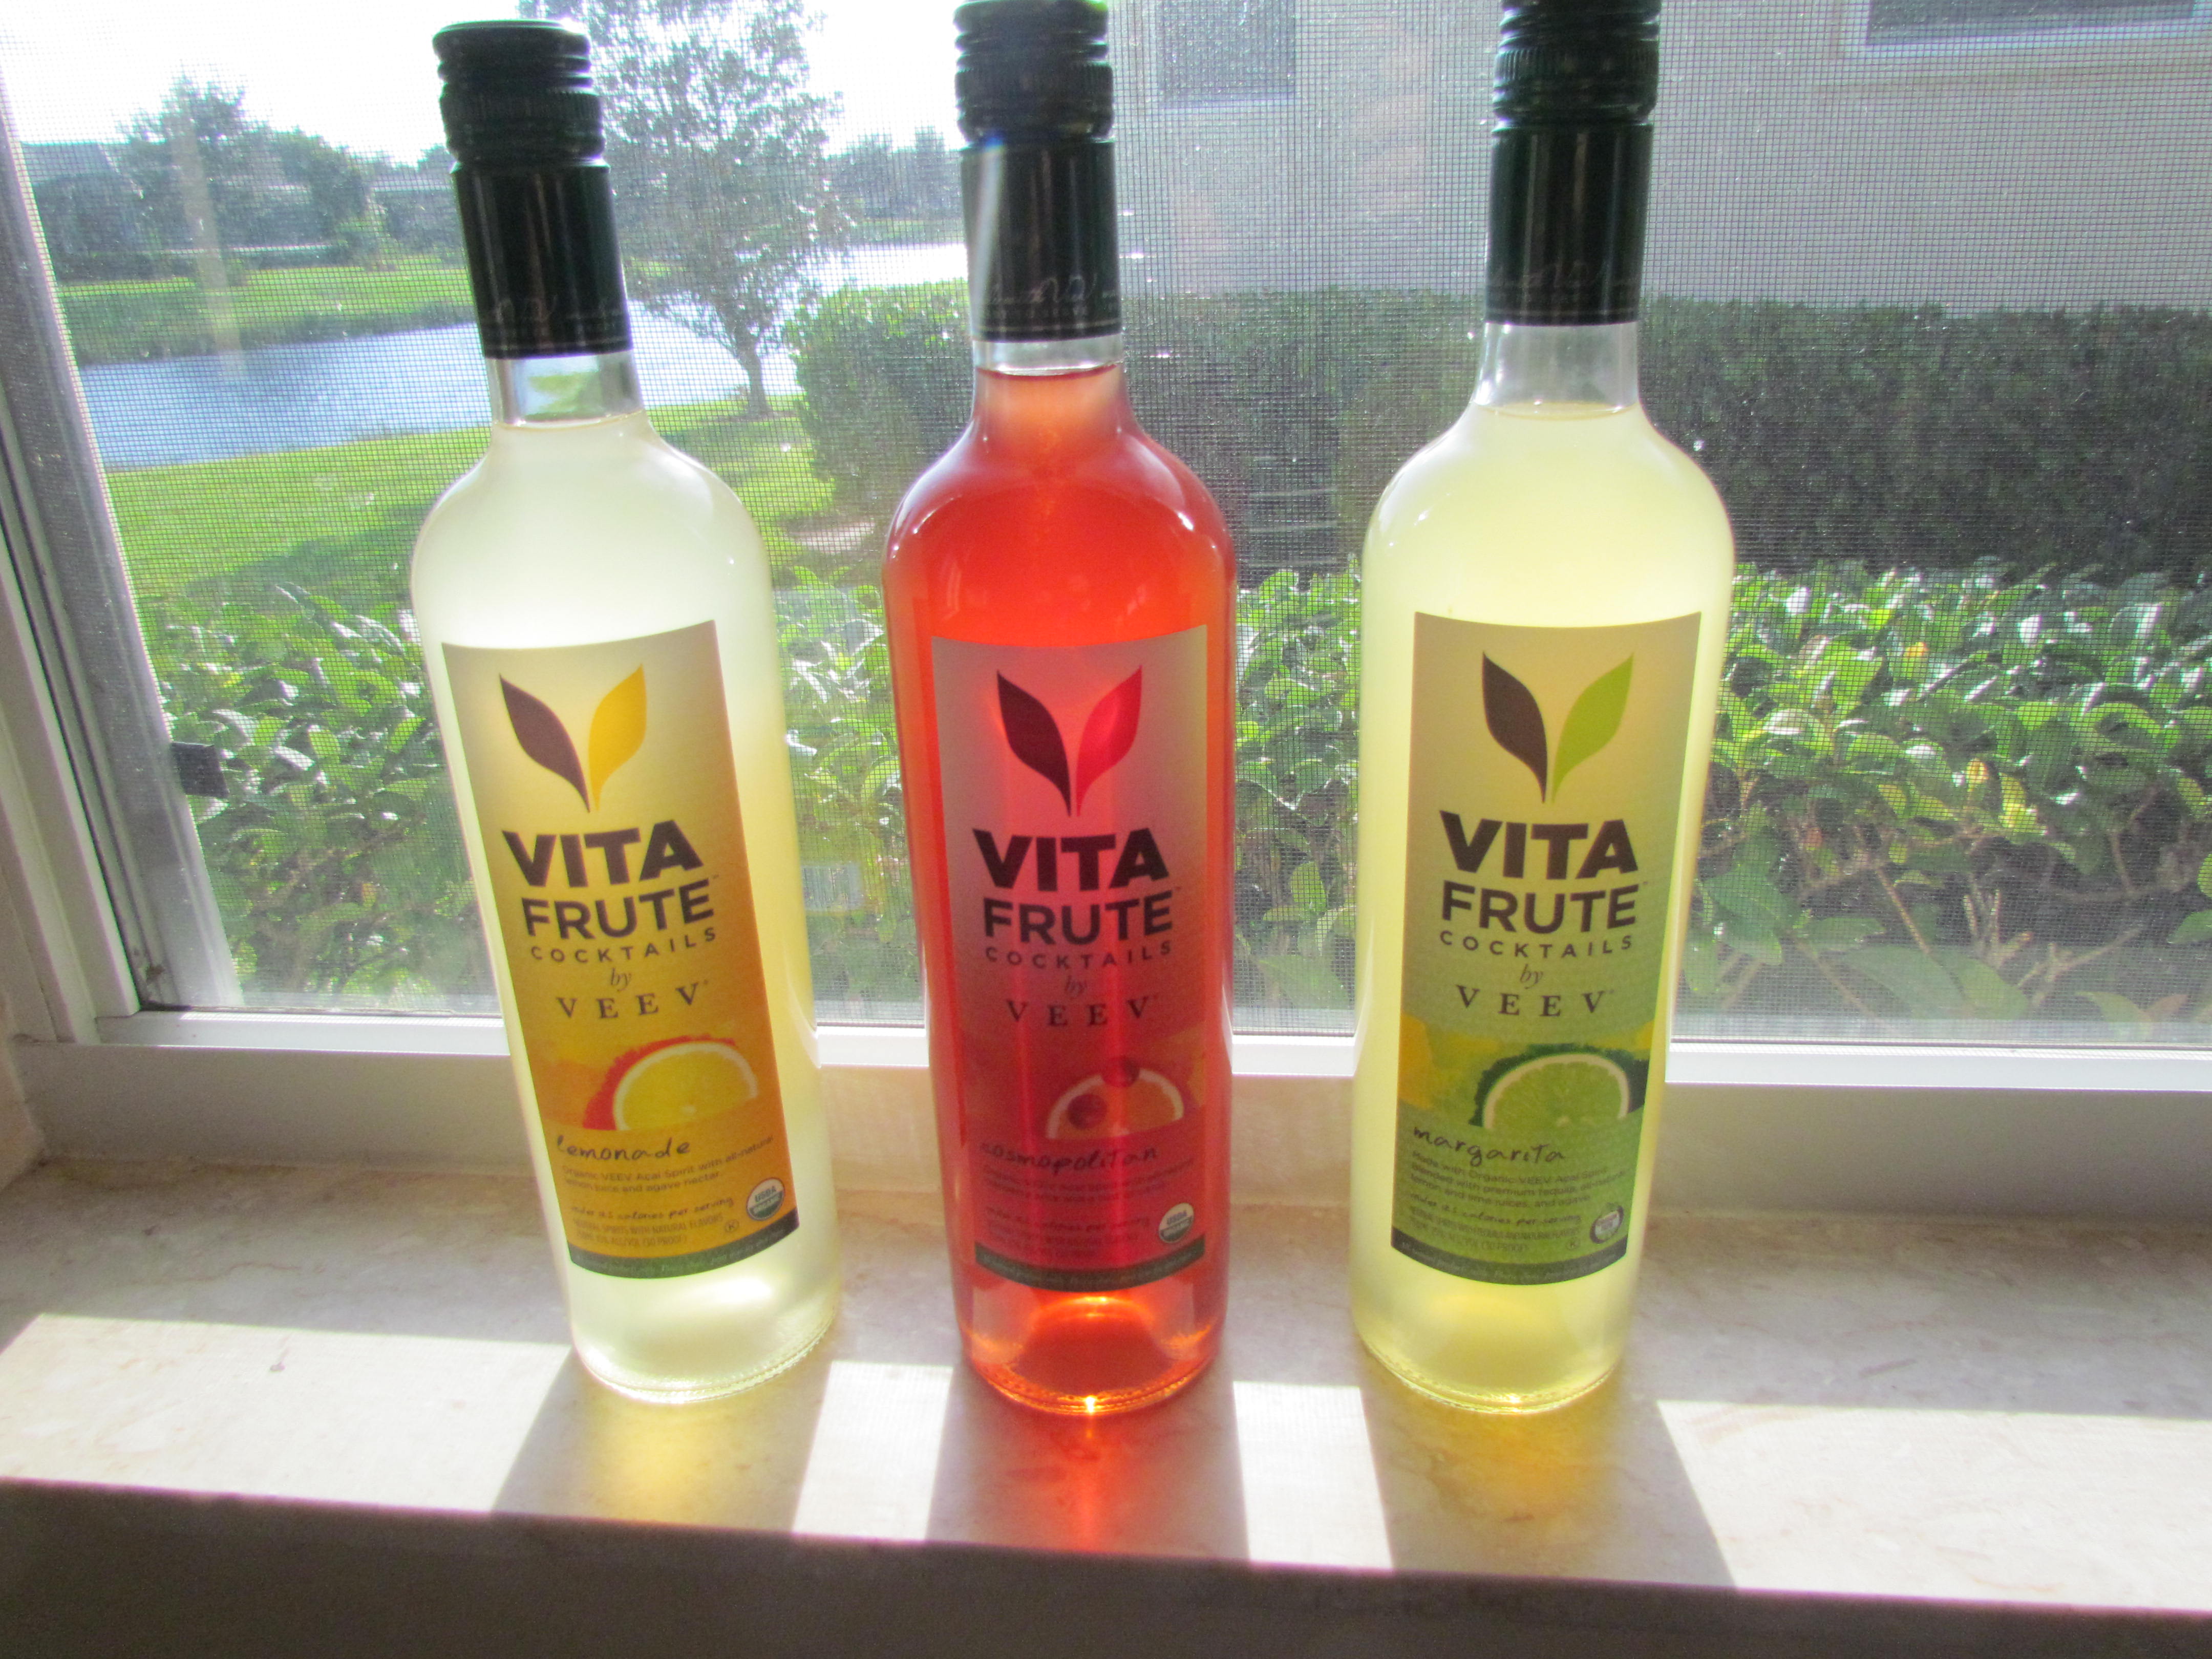 Drink reviews: Vita Frute by VeeV